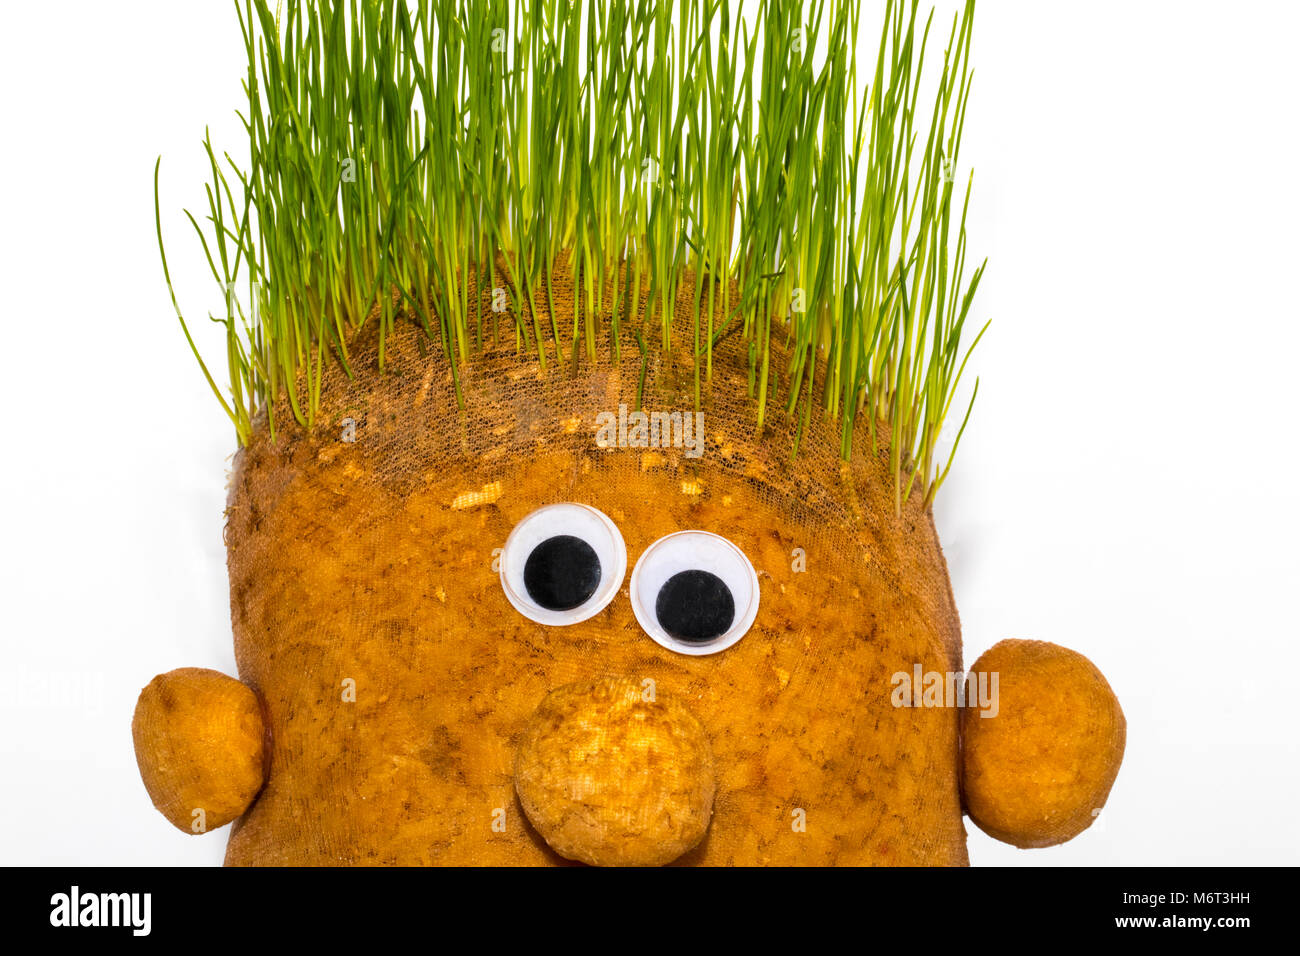 Lustiges Spielzeug Kartoffeln mit grünen lebenden Haar Stockfotografie -  Alamy